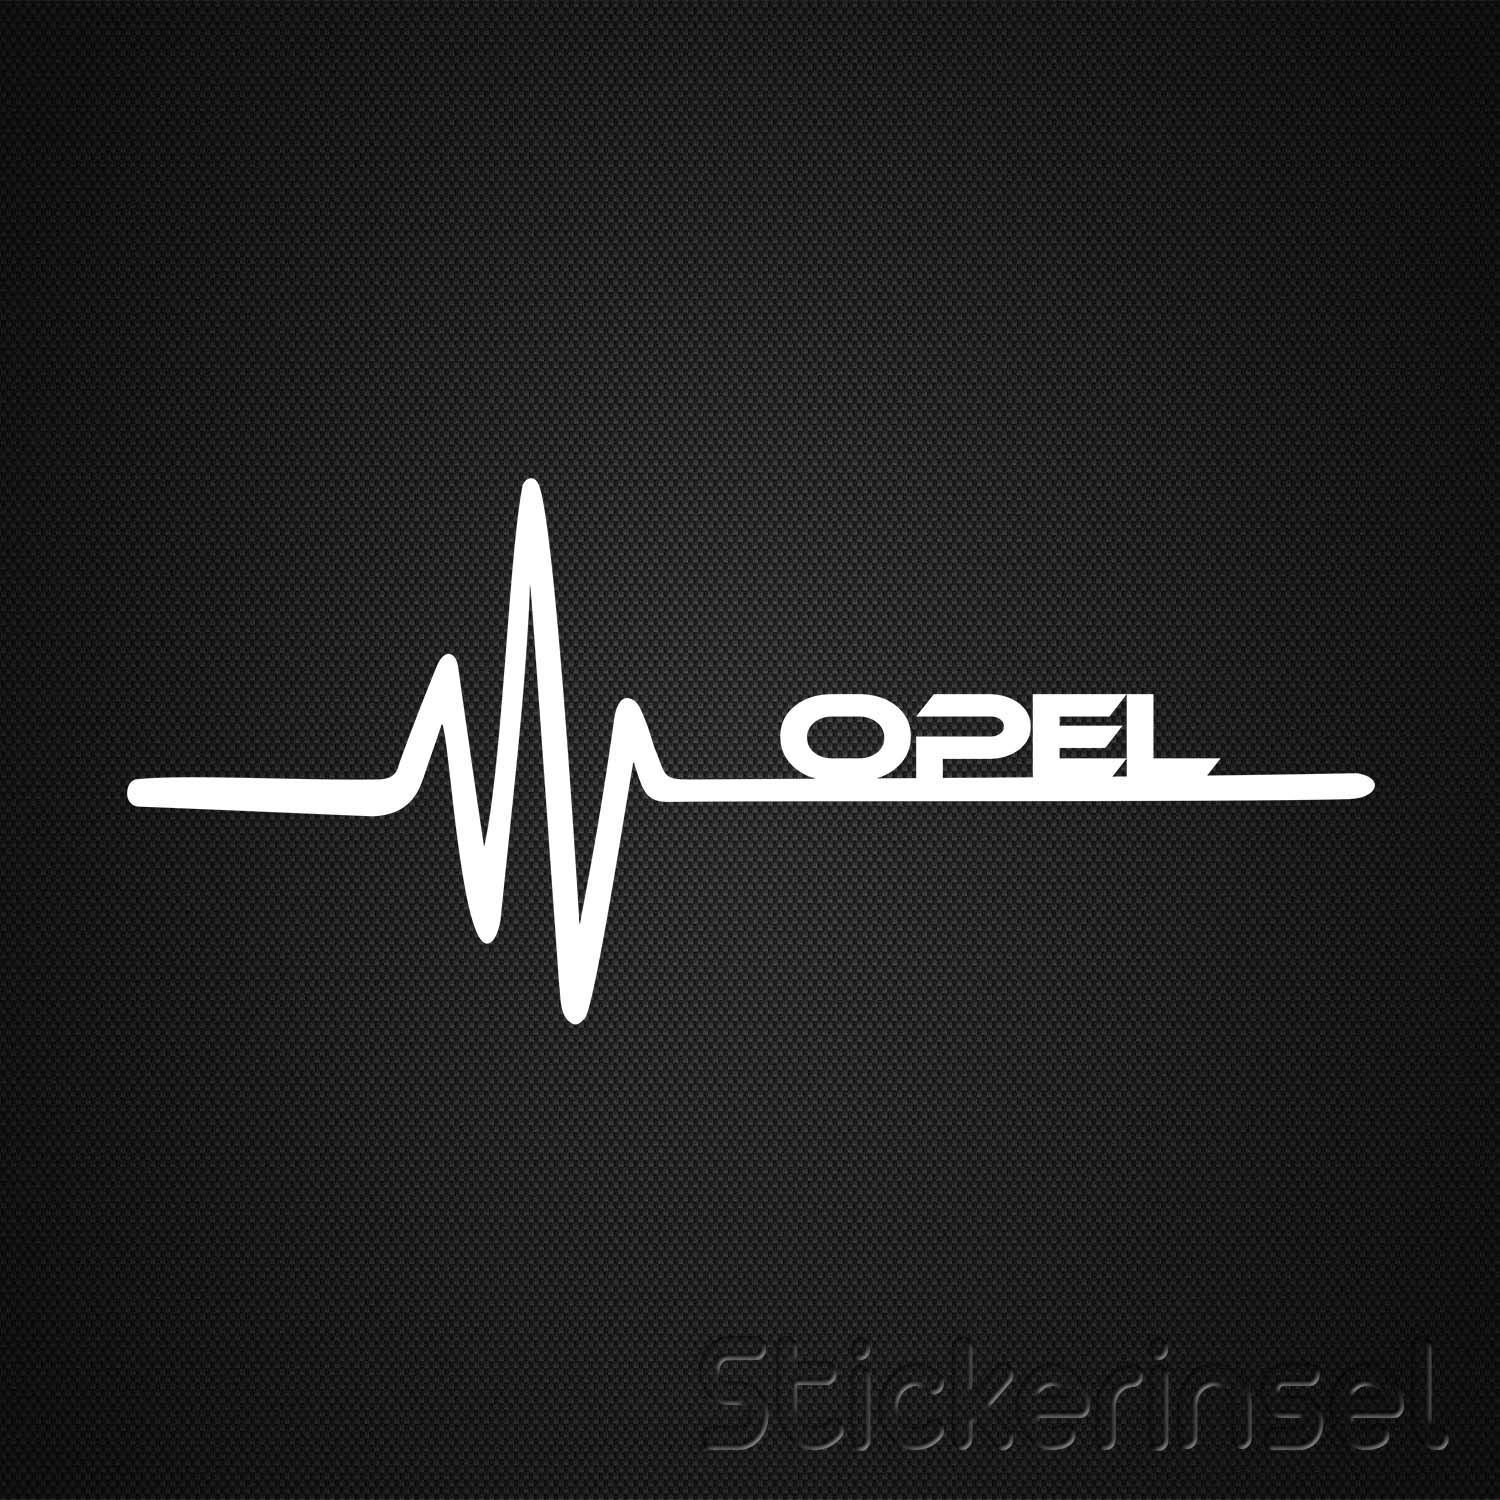 https://www.stickerinsel.at/wp-content/uploads/2016/04/Stickerinsel_Autoaufkleber_Heartbeat-Opel.jpg